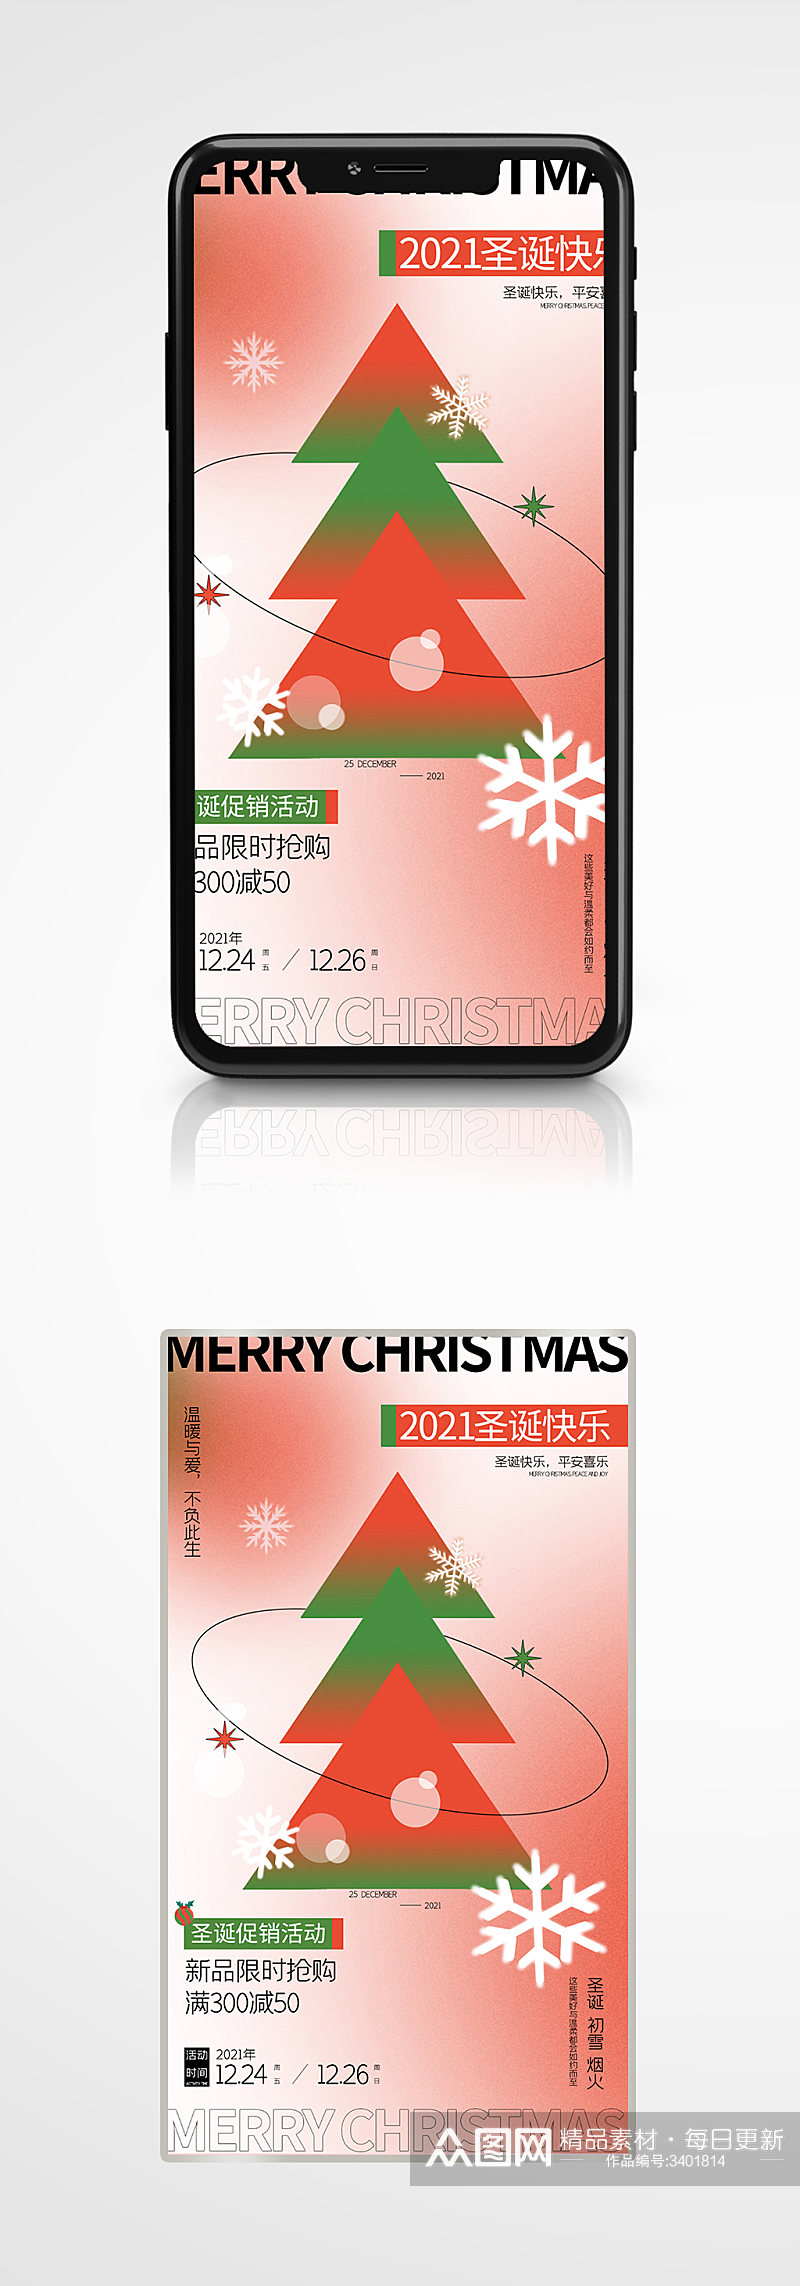 大促酸性渐变圣诞营销双旦促销宣传手机海报素材